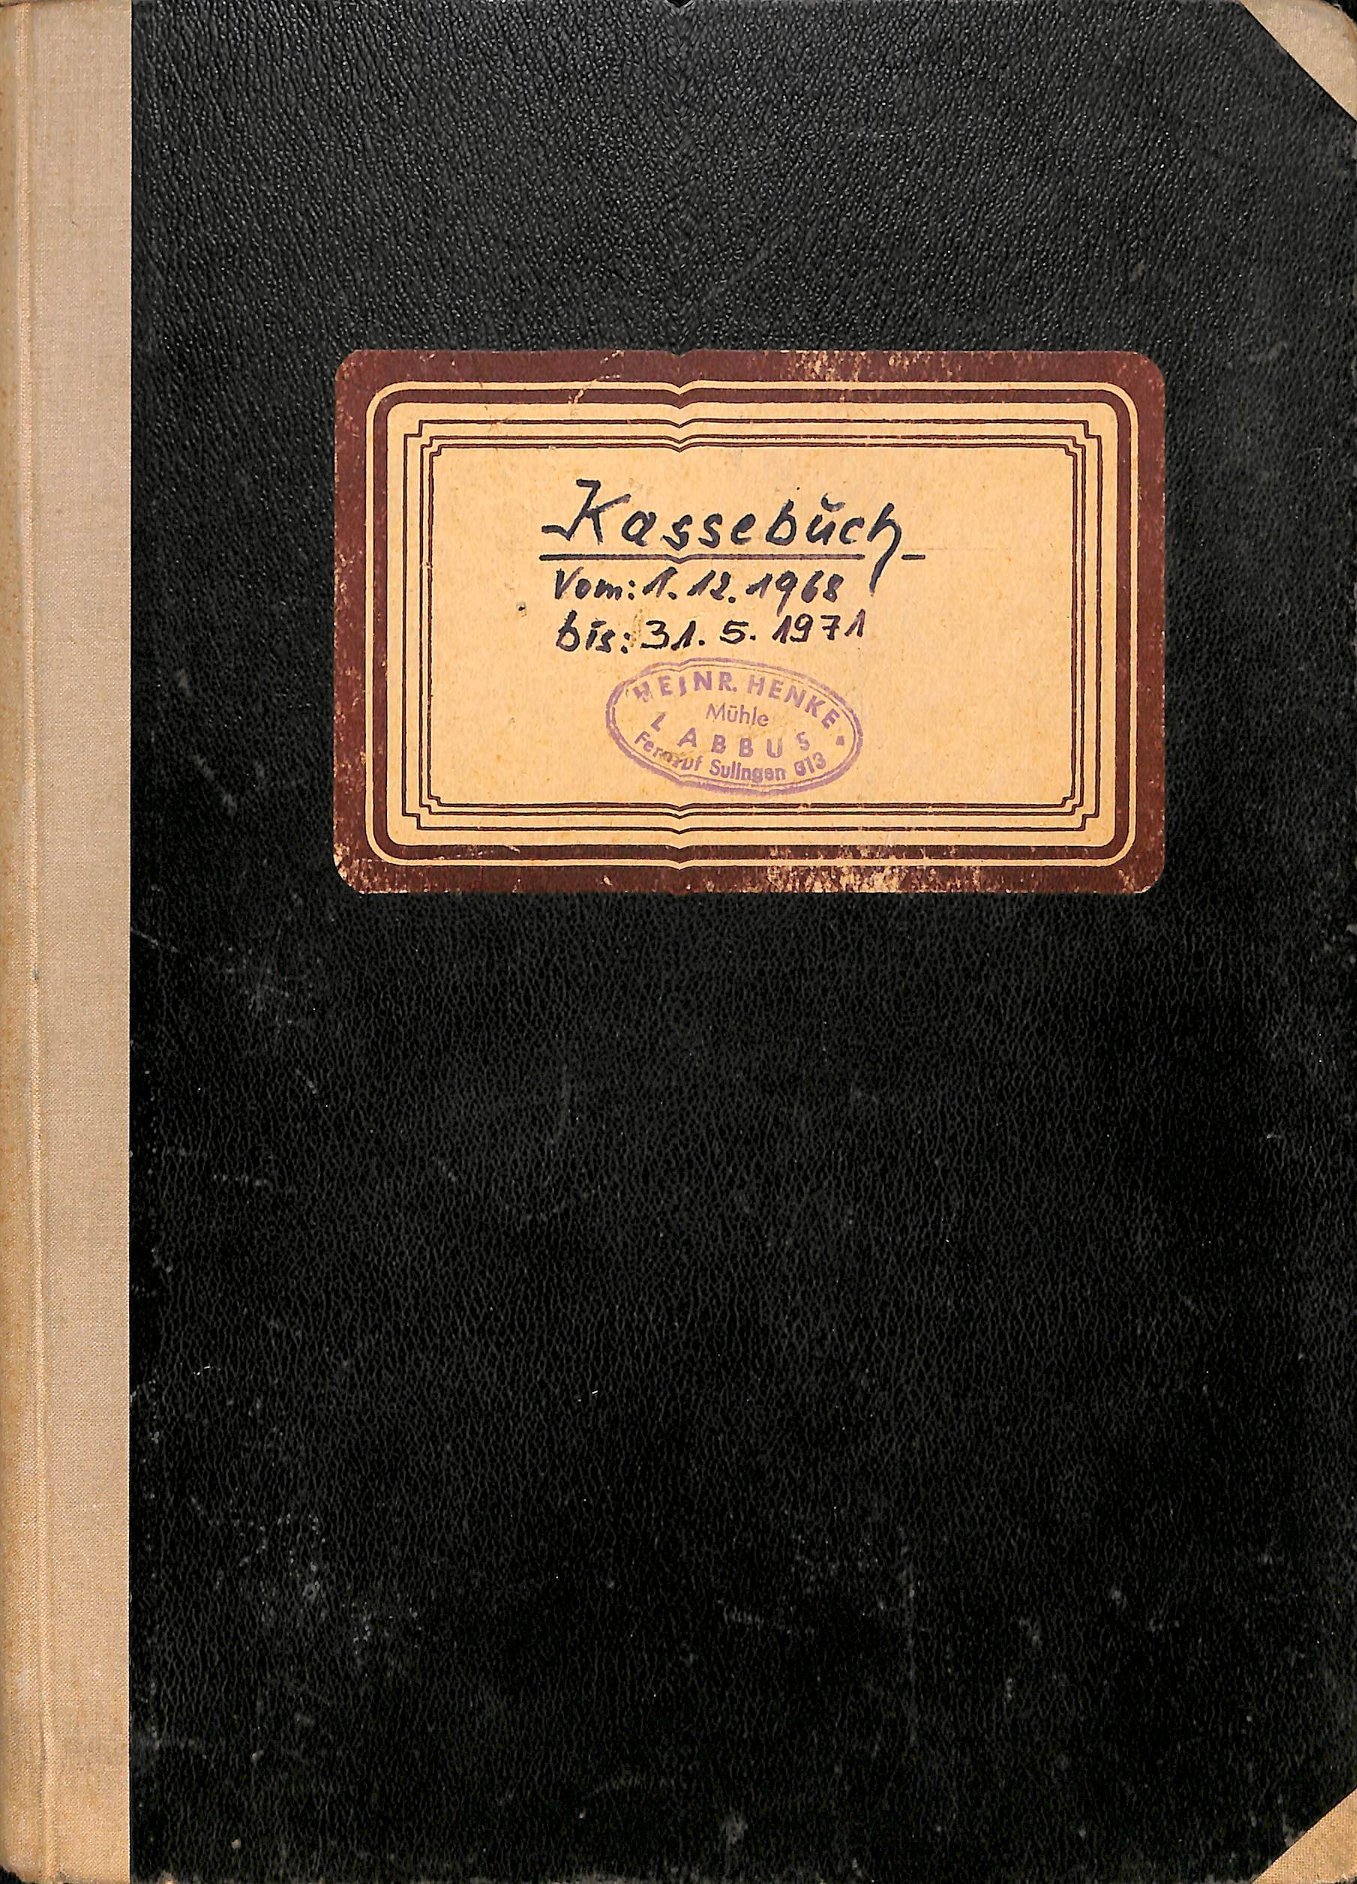 "Kassebuch" der Mühle Heinrich Henke, Labbus bei Sulingen (Kreismuseum Syke CC BY-NC-SA)